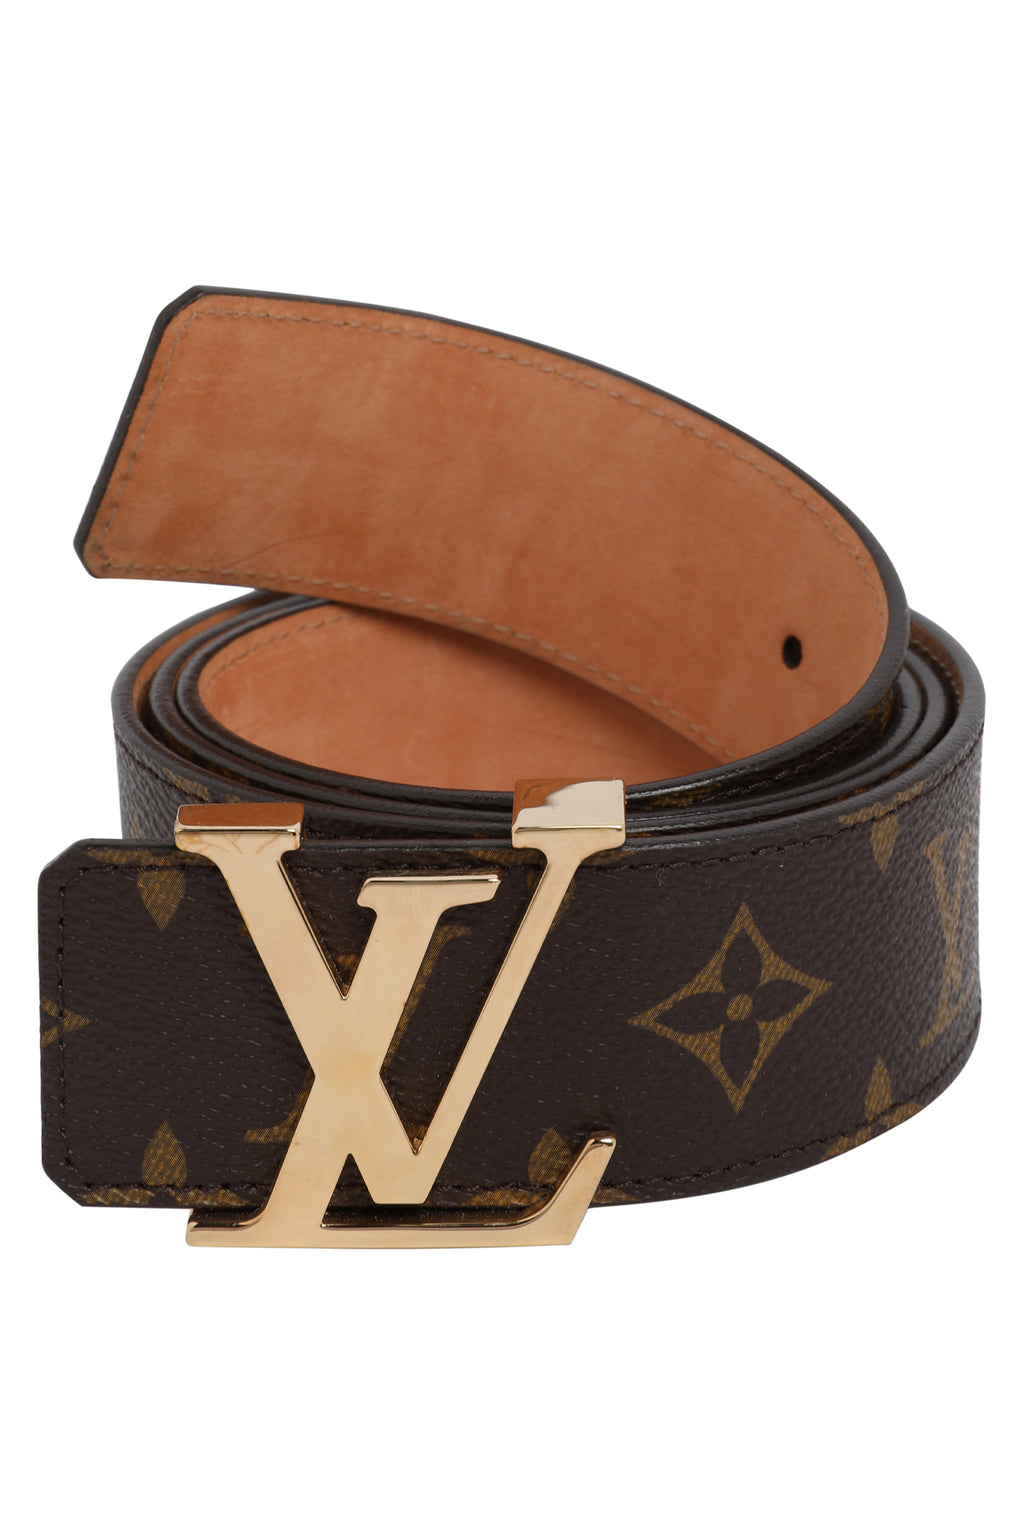 Louis Vuitton Demier Ebene Leather Belt Brown 95